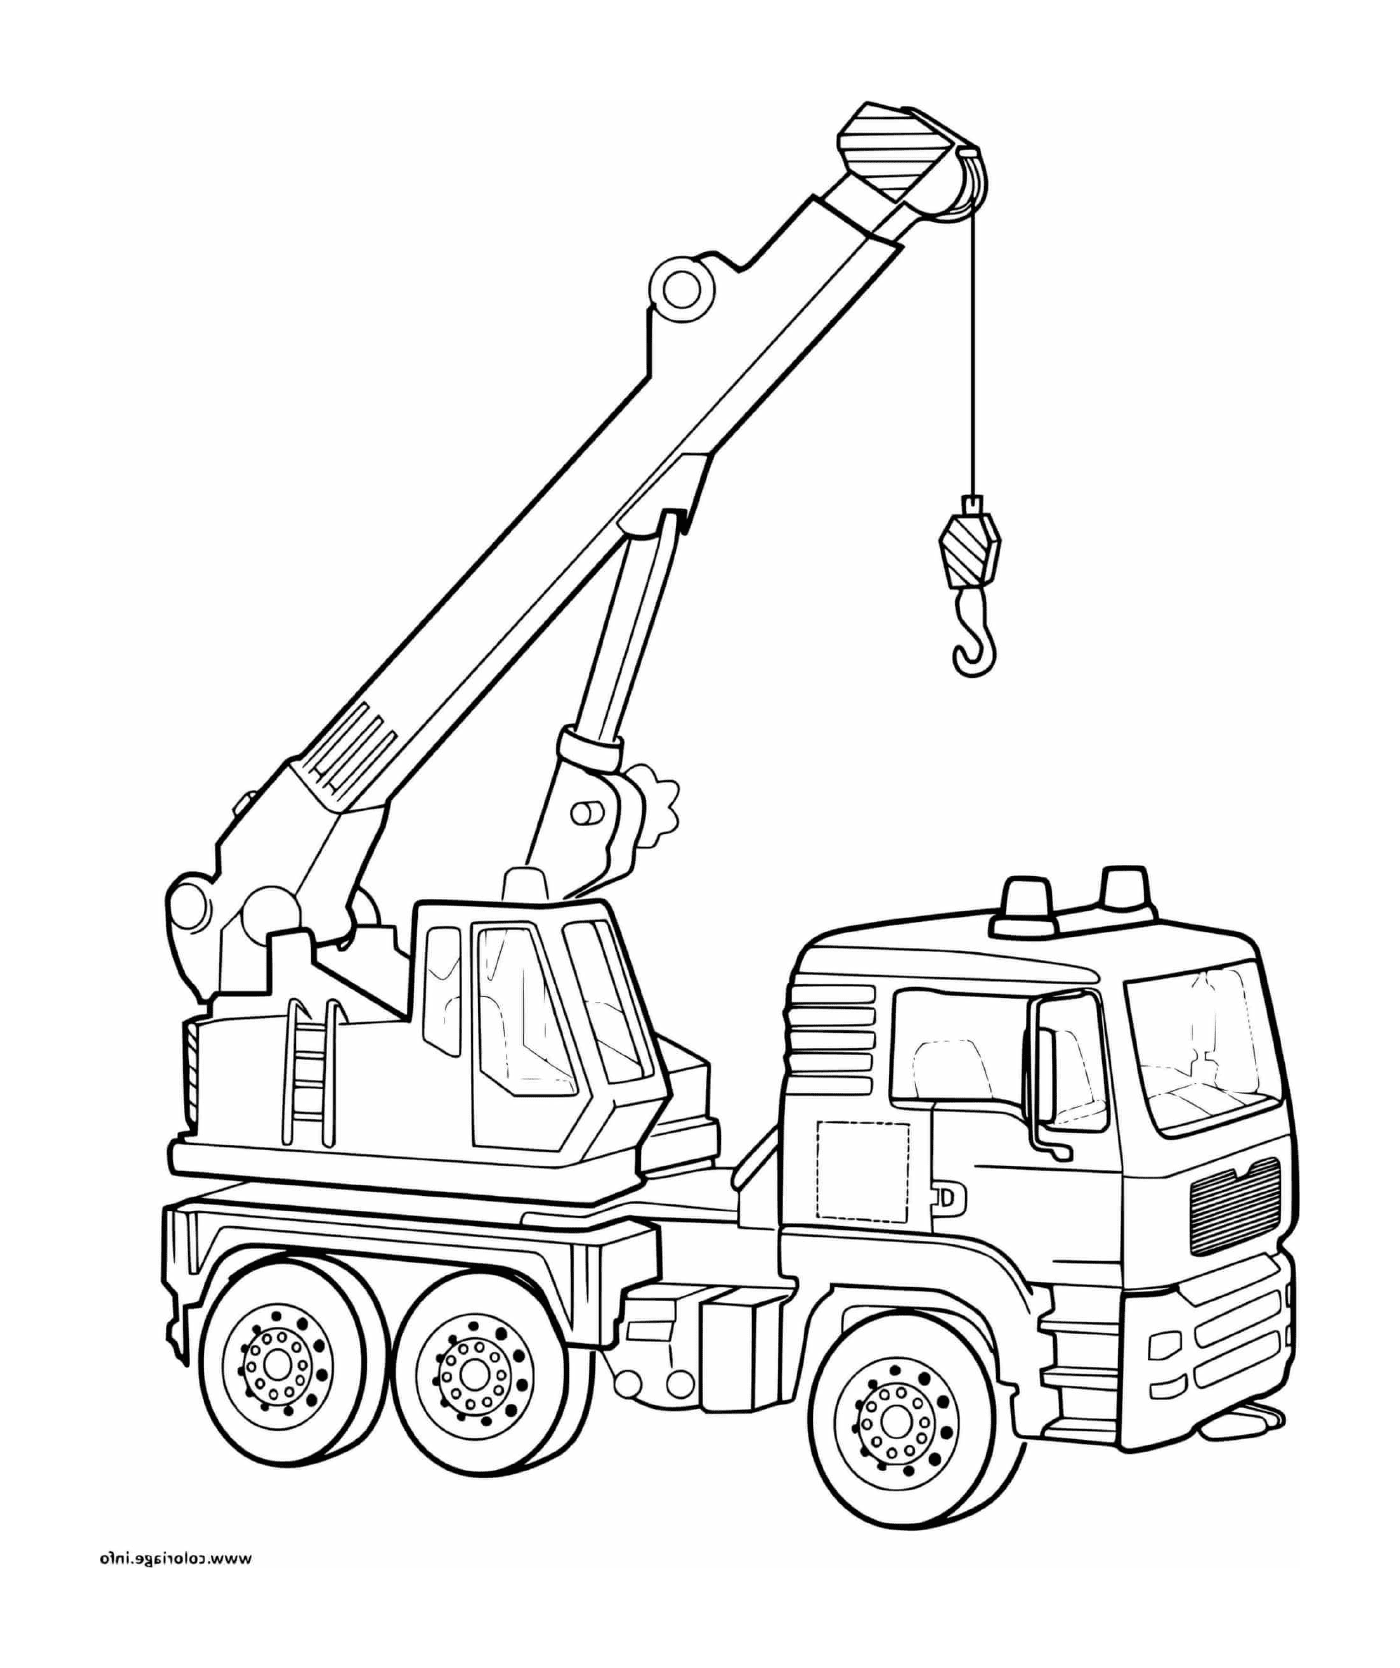  Un camión grúa utilizado en una obra de construcción 